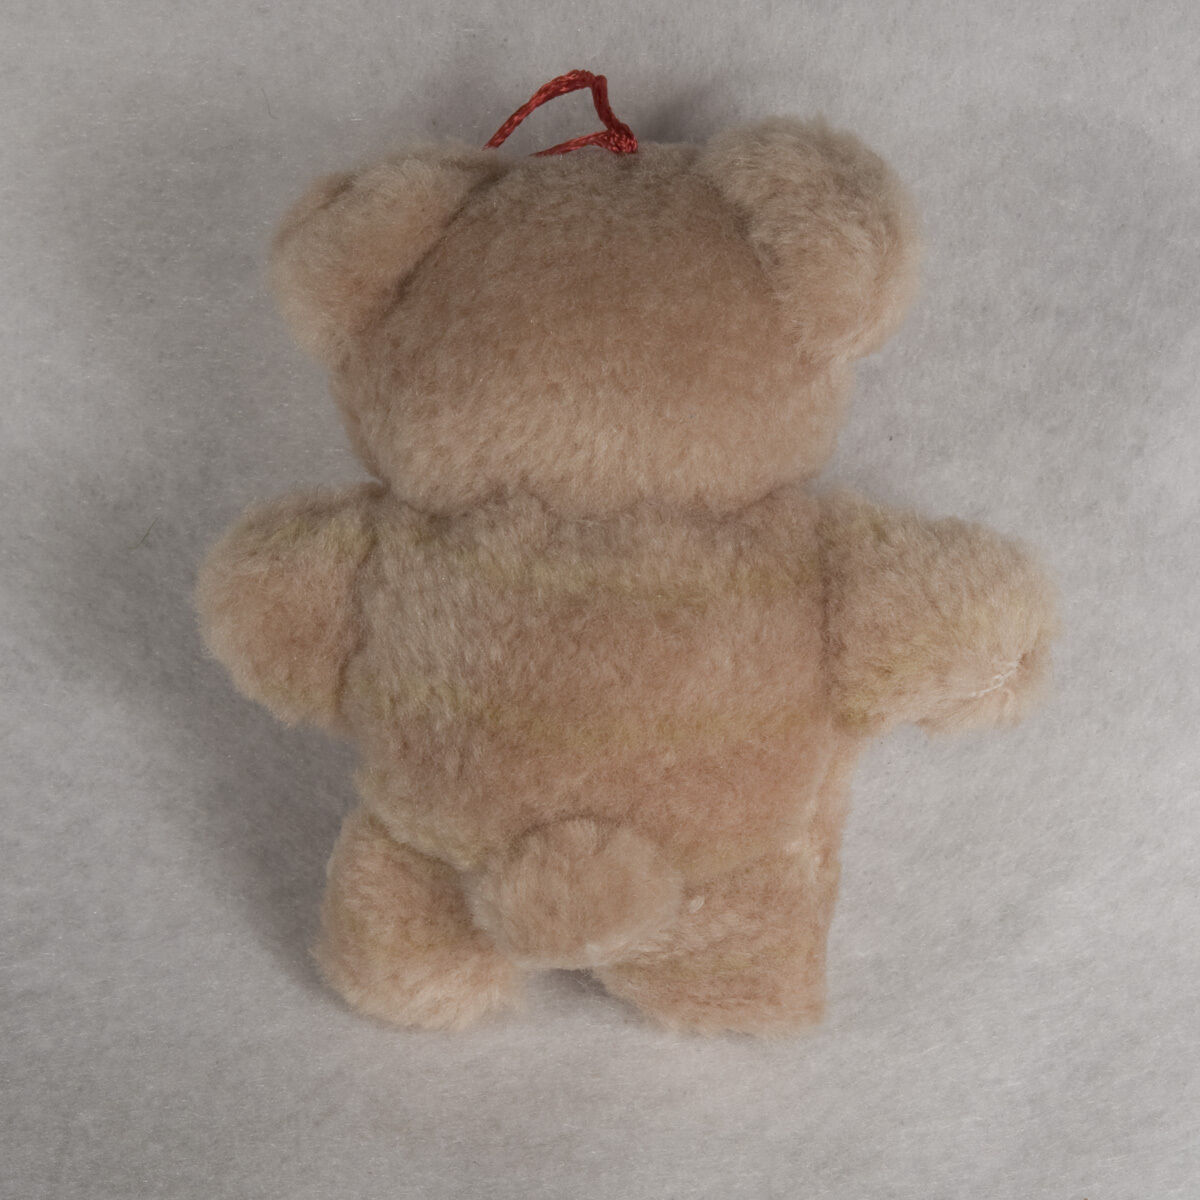 6 Piece Lot 4" Plush Teddy Bear #12202122 Unbranded - фотография #2